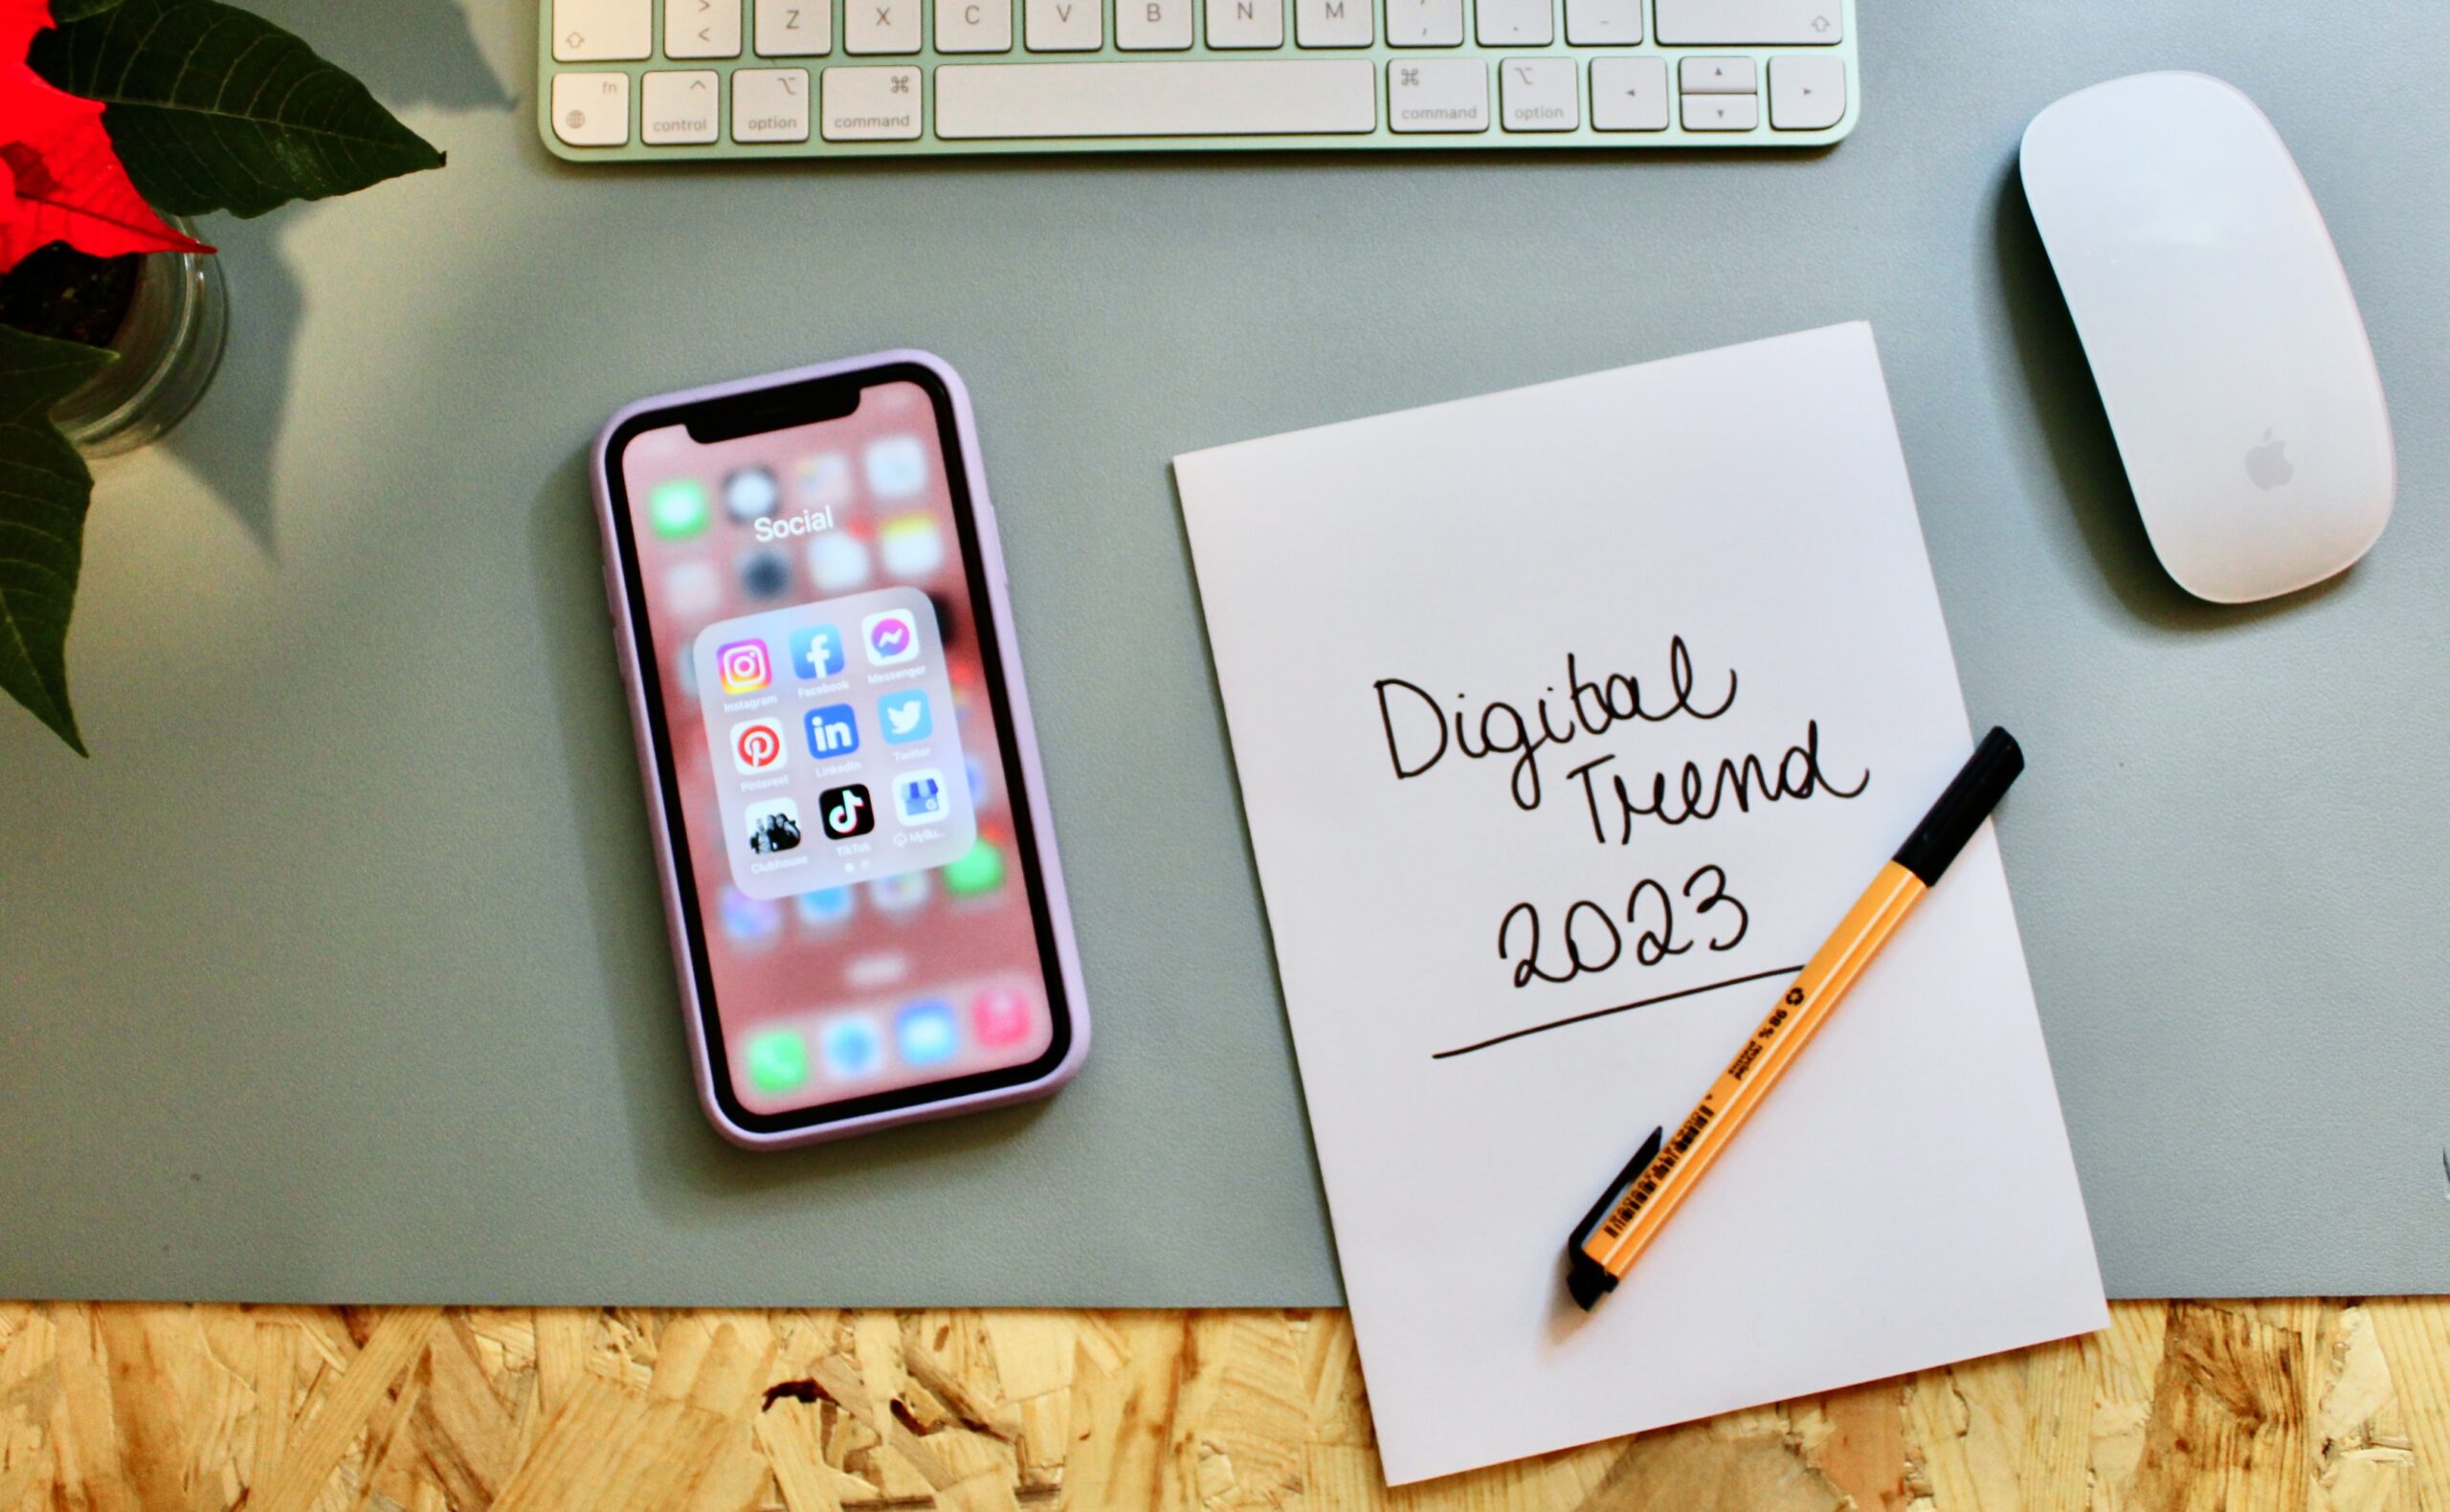 Digital marketing trend 2023. Previsioni e tendenze del settore